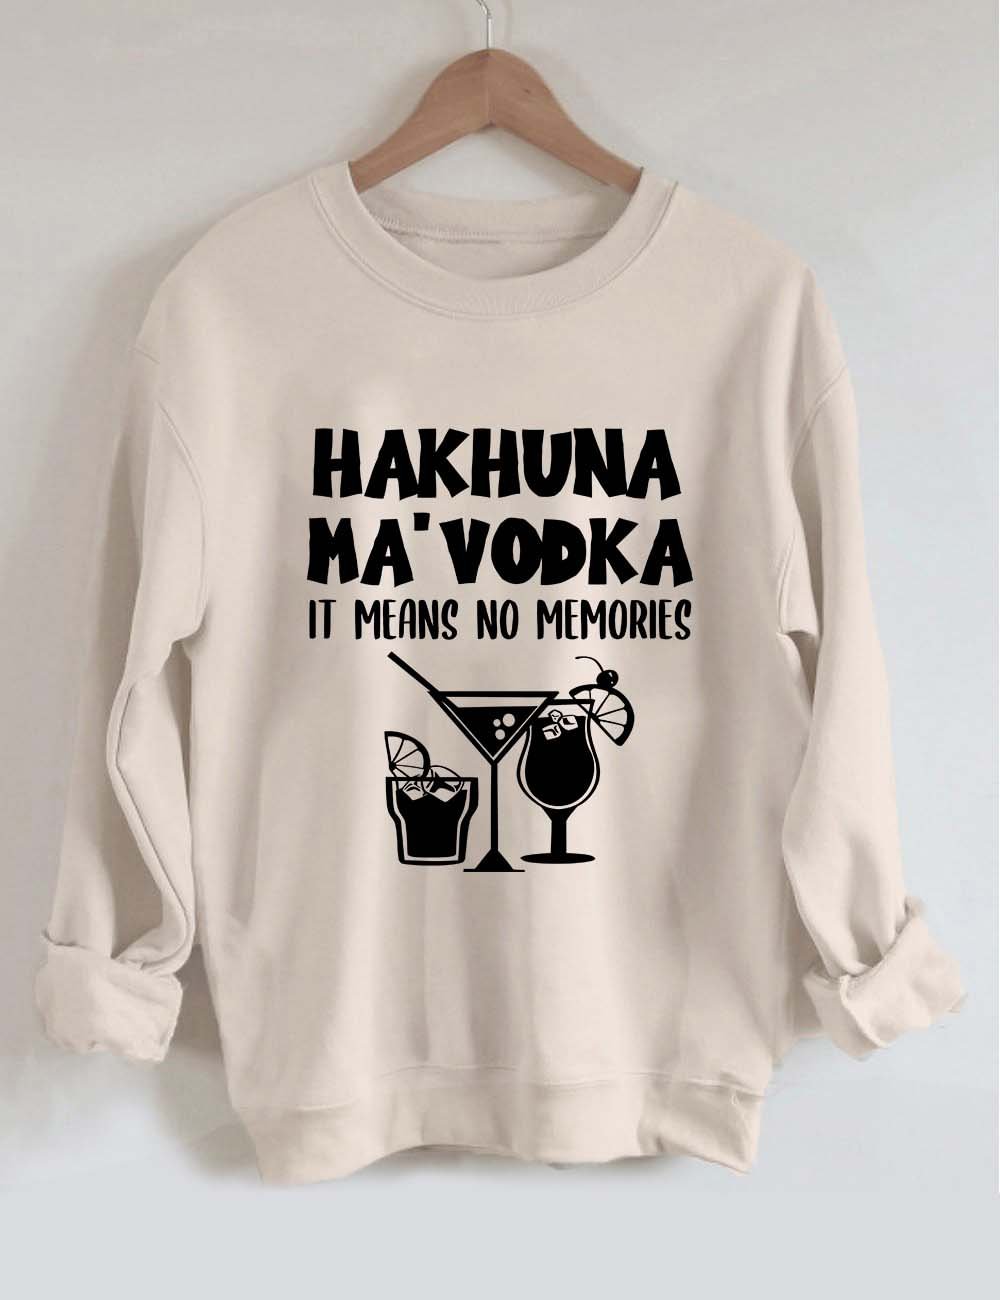 Hakhuna Ma Vodka Drinking Sweatshirt